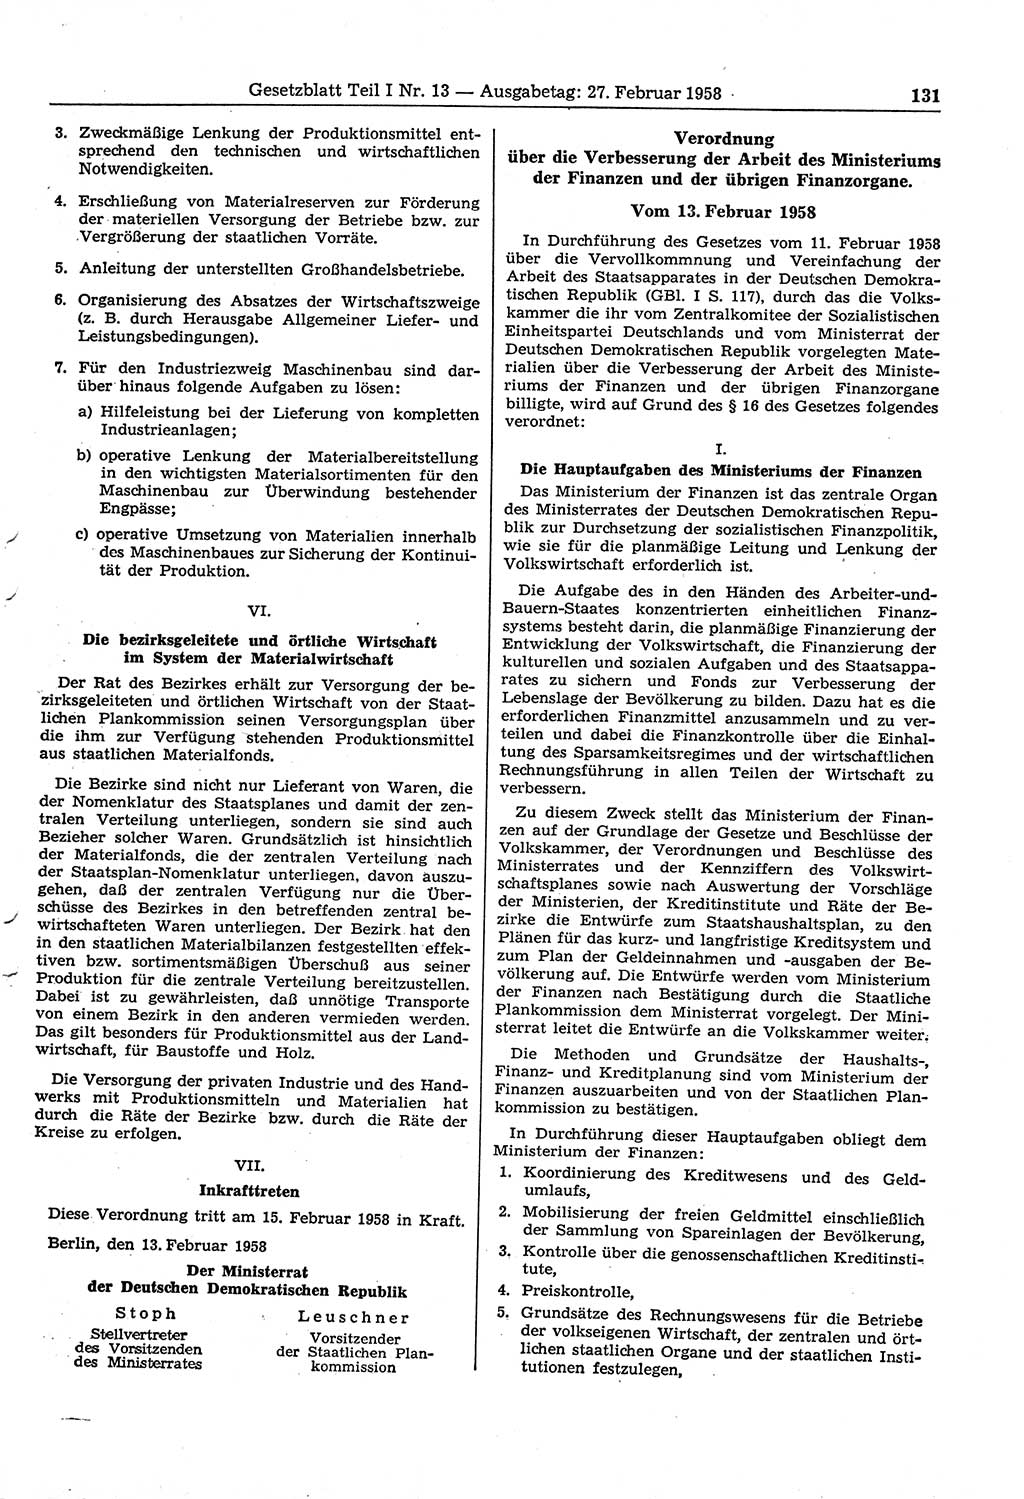 Gesetzblatt (GBl.) der Deutschen Demokratischen Republik (DDR) Teil Ⅰ 1958, Seite 131 (GBl. DDR Ⅰ 1958, S. 131)